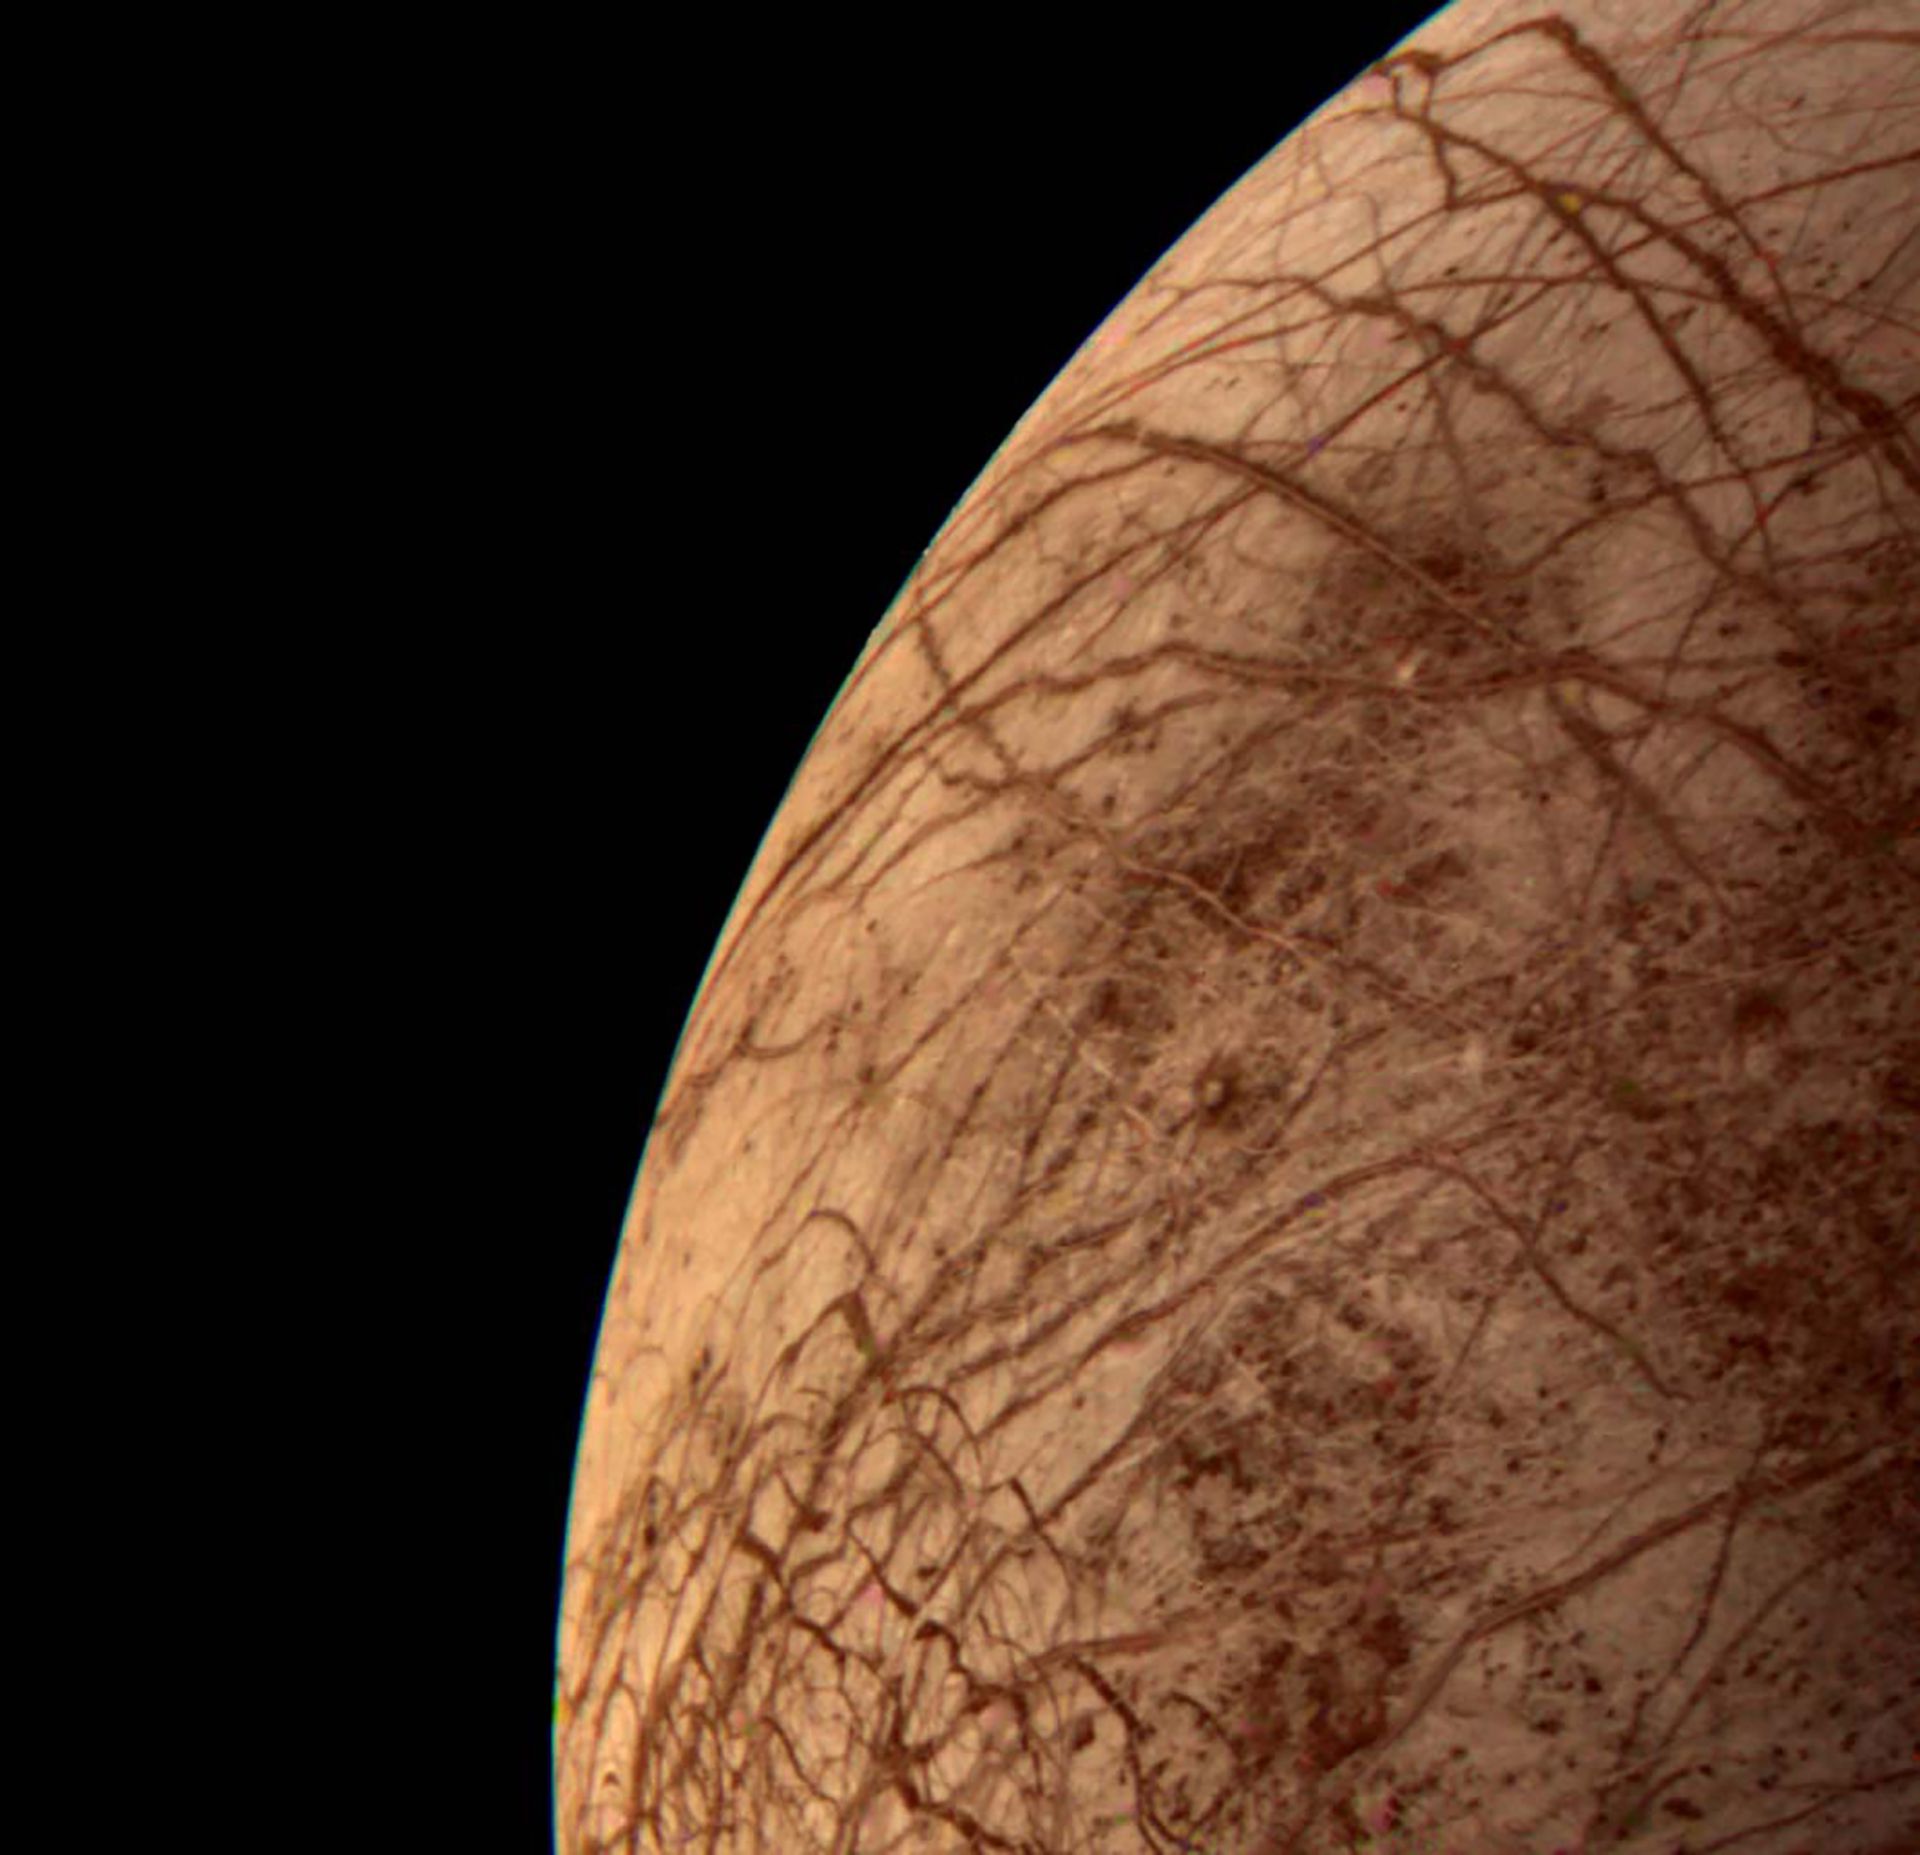 La intriga sobre Europa. El 9 de julio de 1979, la misión Voyager 2 tomó esta imagen de la luna de Júpiter "Europa". Se observaron grietas de color rojizo en su superficie helada. Se empezó a sospechar de que ese satélite natural puede contener condiciones propicias para la vida. El equipo del argentino Lucas Paganini encontró agua en forma de vapor. El vapor irrumpe en grandes géiseres en Europa. (NASA/Paganini)